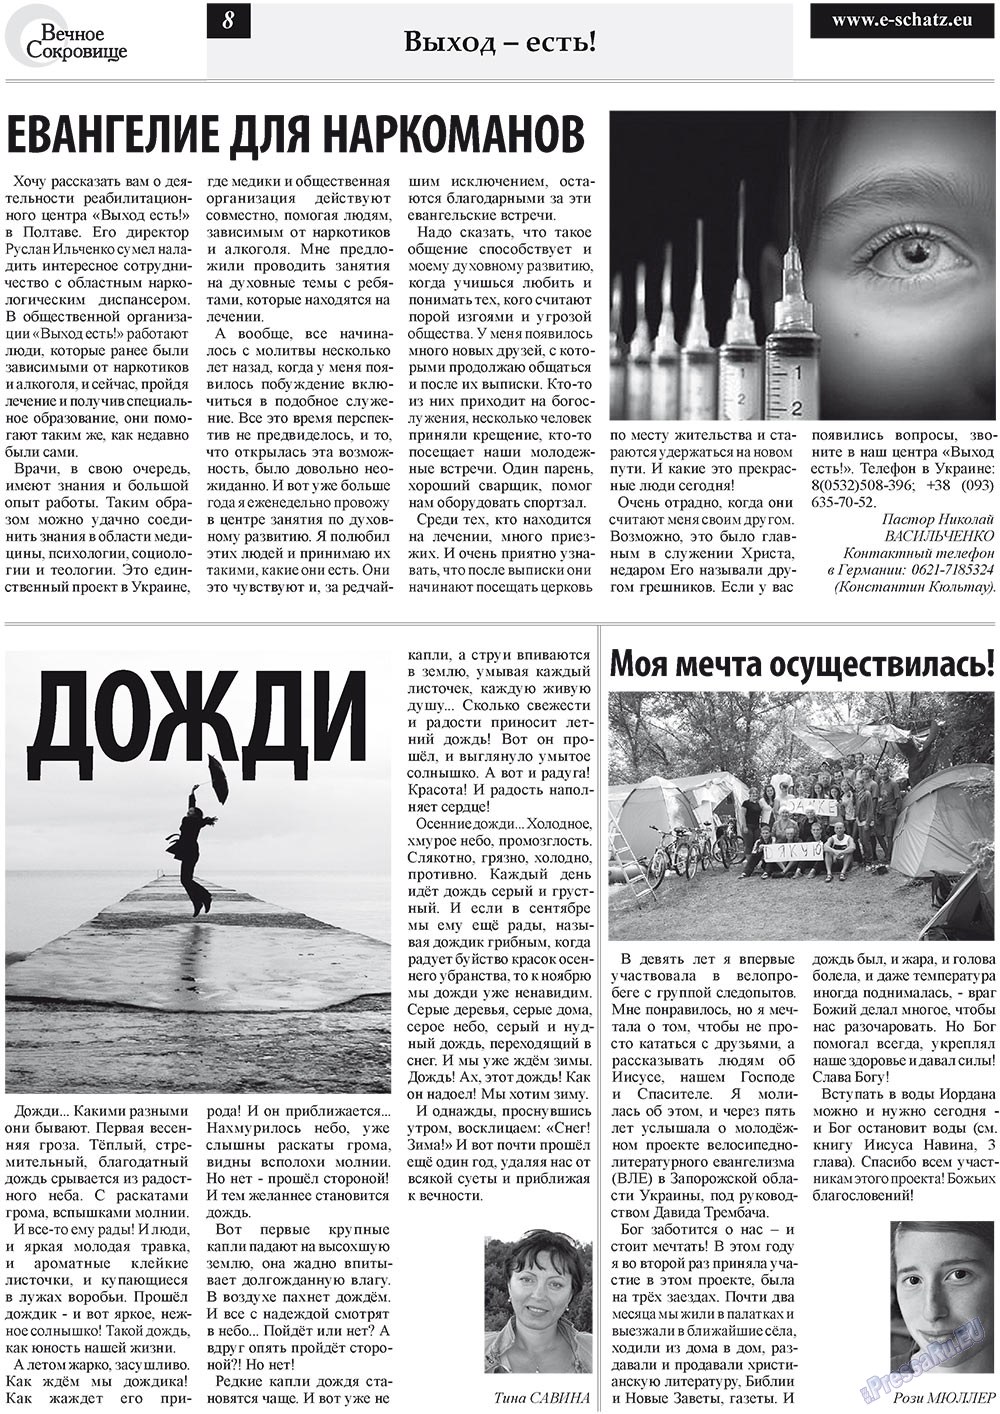 Вечное сокровище (газета). 2011 год, номер 5, стр. 8